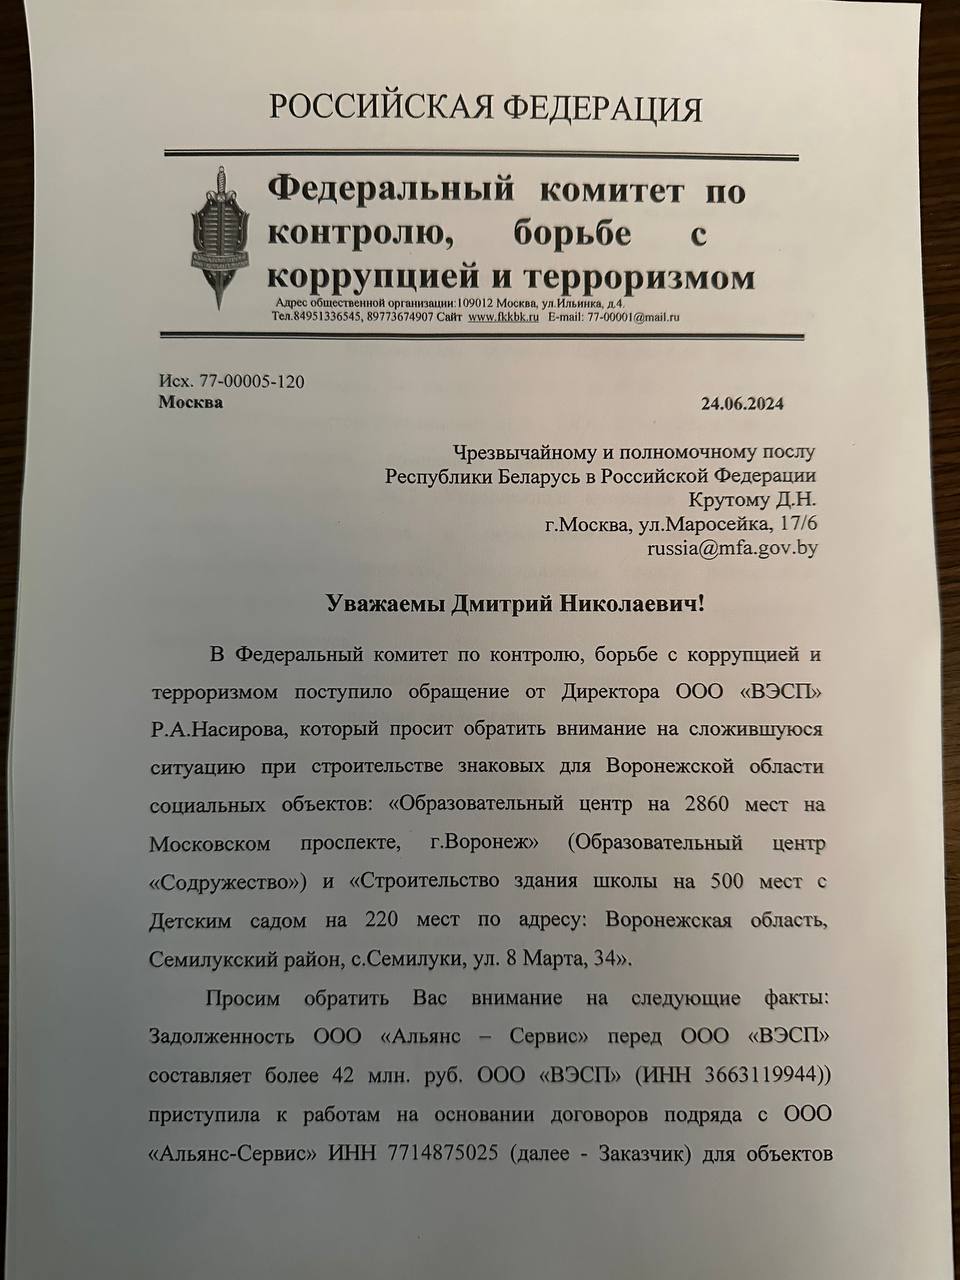 Федеральный комитет по контролю, борьбе с коррупцией и терроризмом Белоруссия